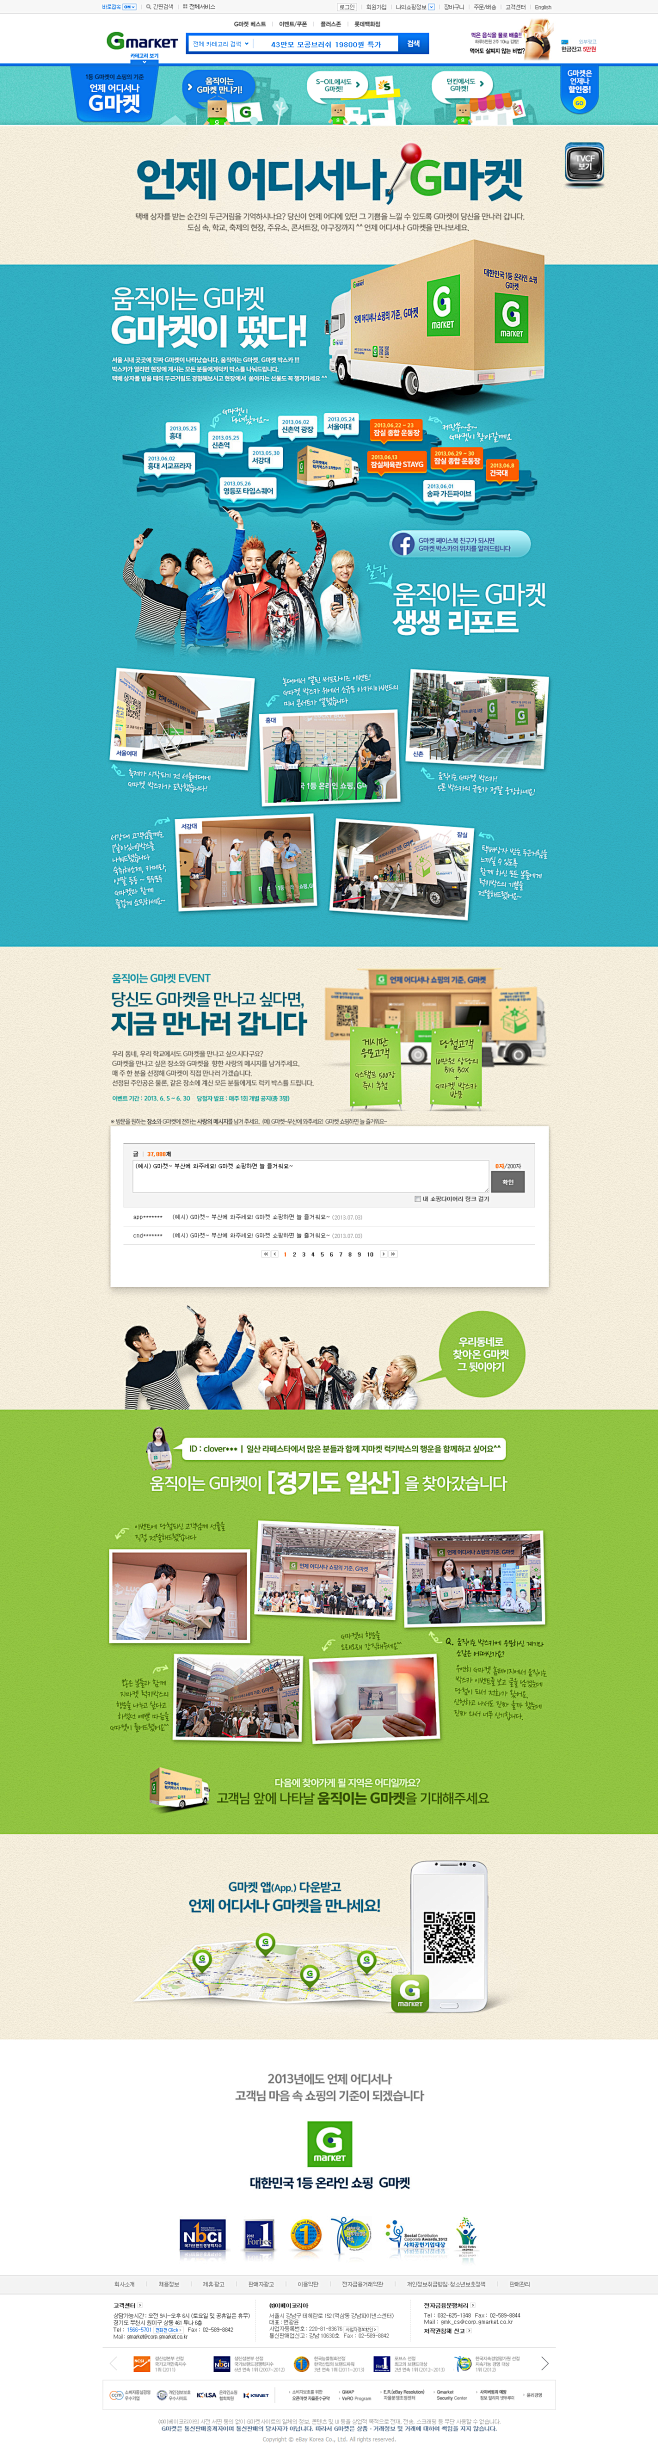 韩国Gmarket活动专题页面，http...